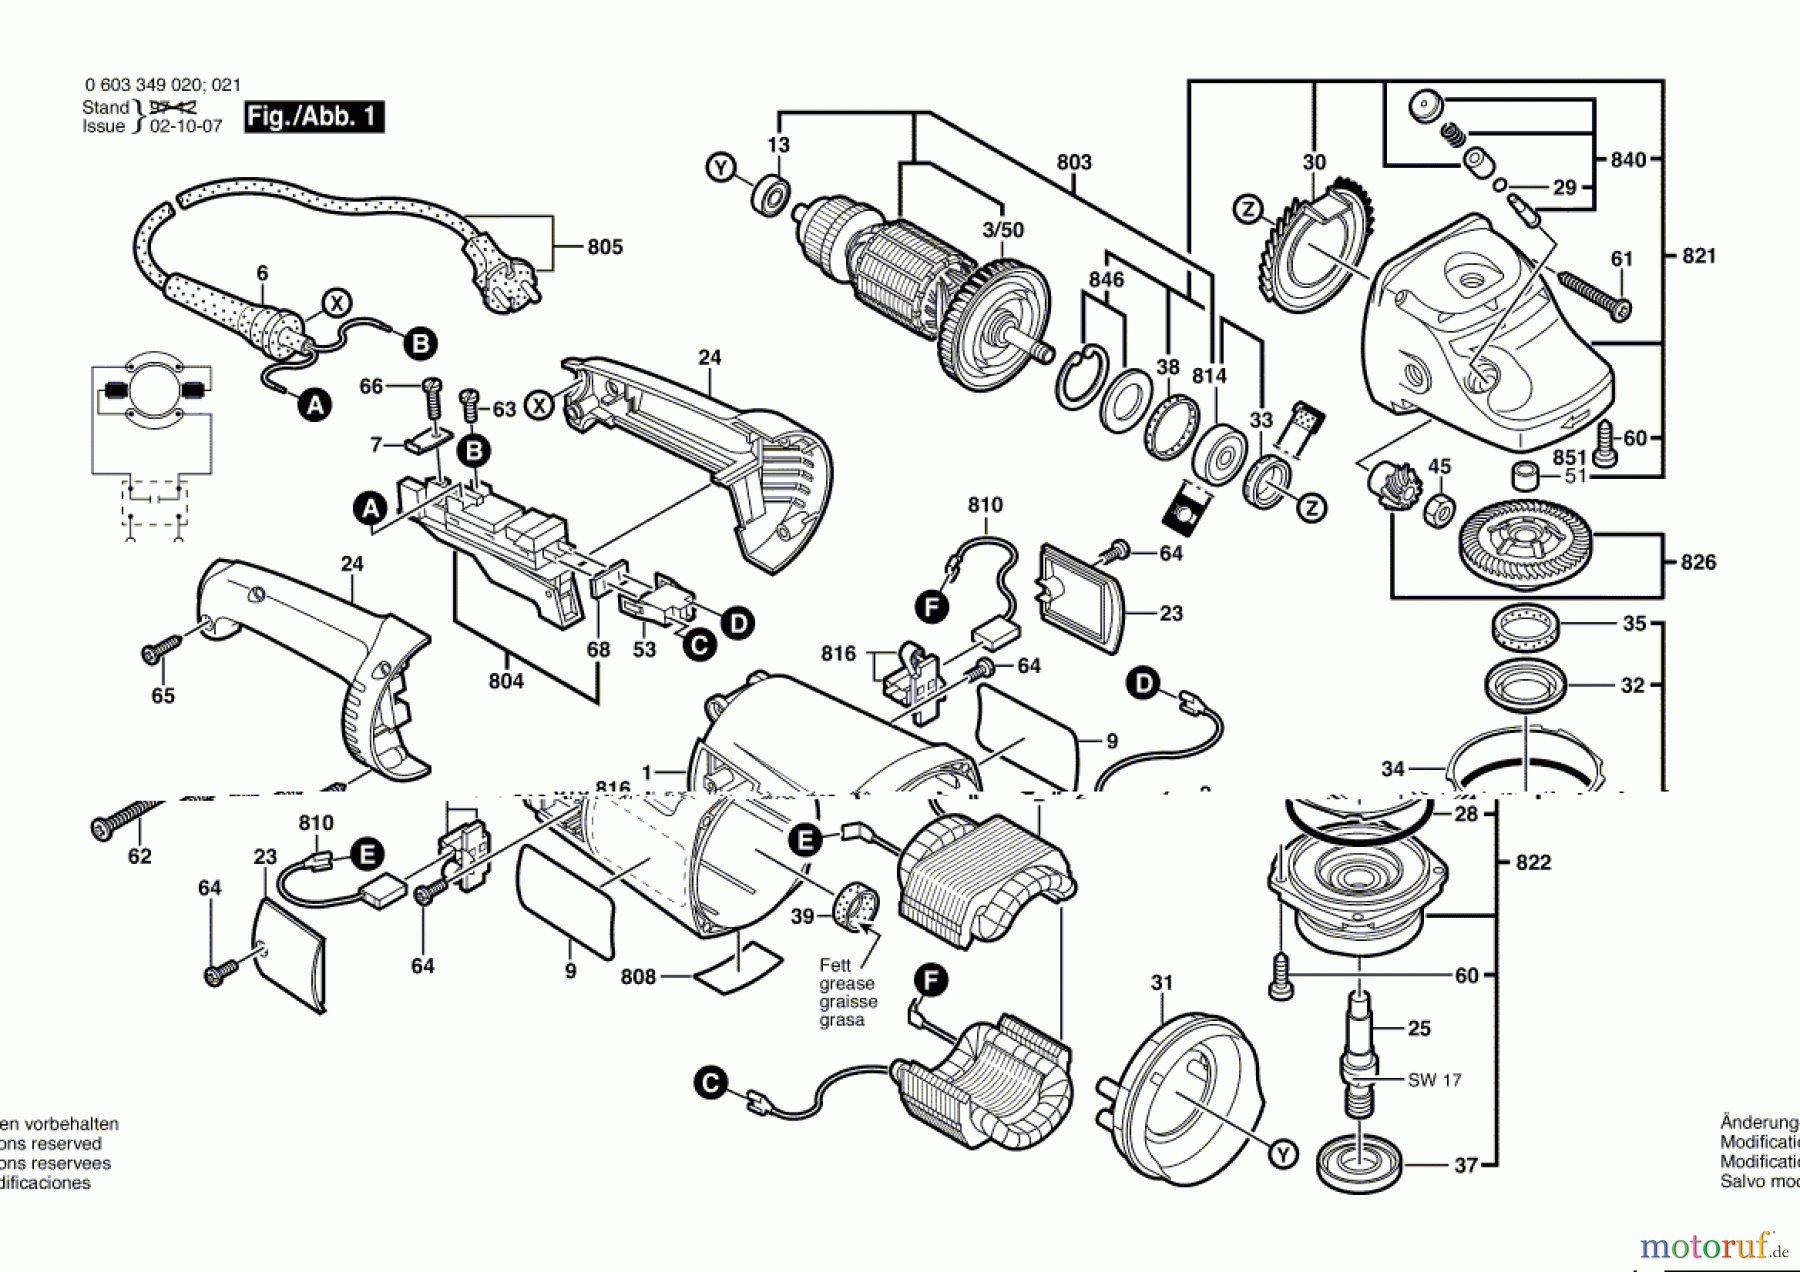  Bosch Werkzeug Winkelschleifer PWS 1800 Seite 1